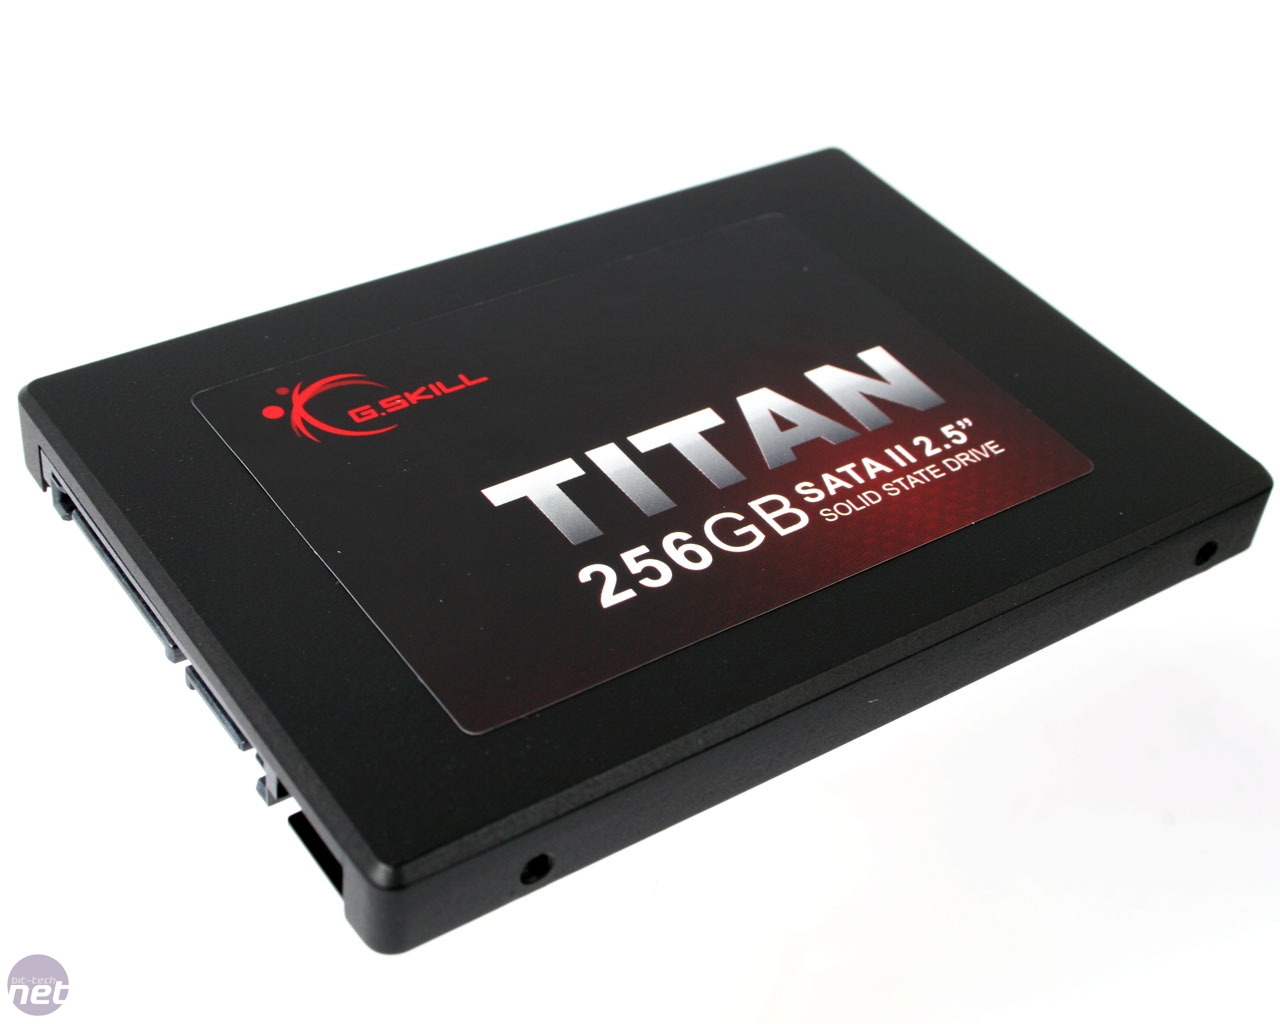 G.Skill Titan 256GB SSD | bit-tech.net